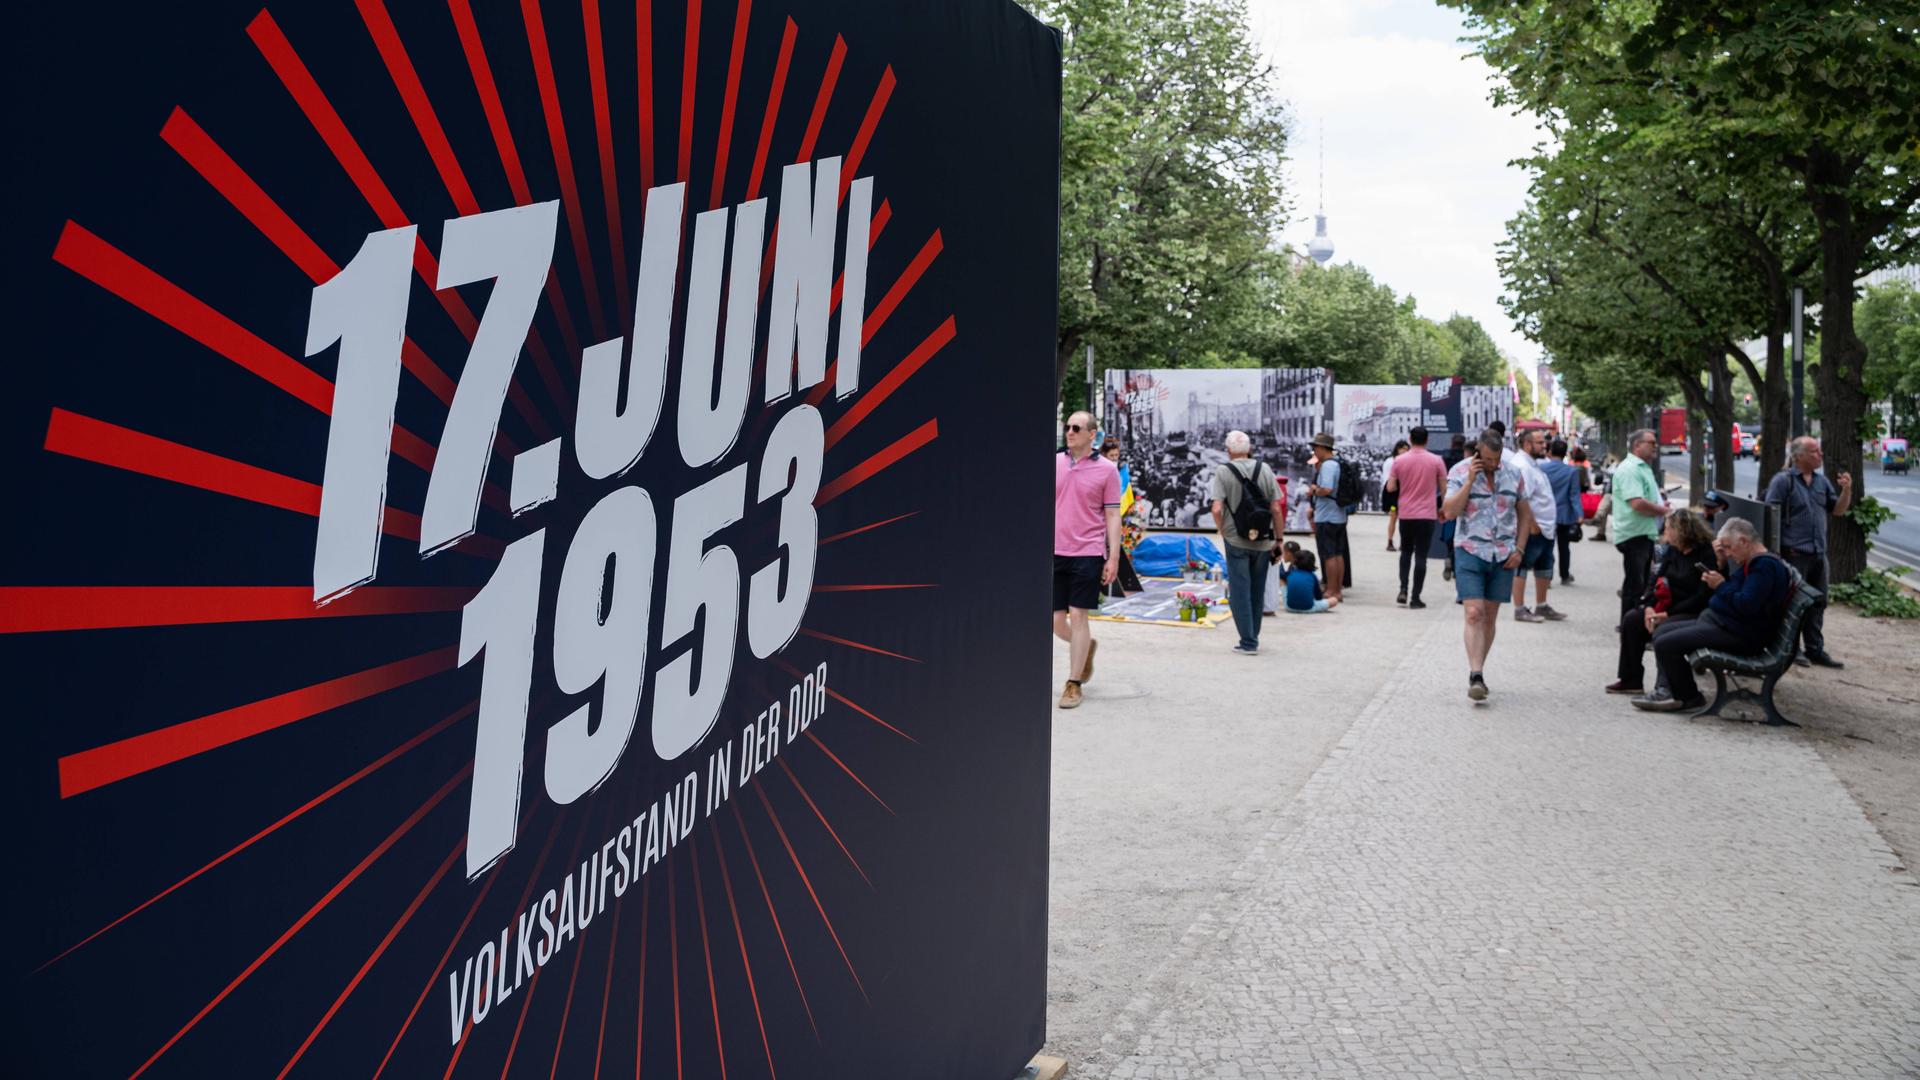 Freiluft-Ausstellung und Gedenkveranstaltung entlang des Boulevards Unter den Linden anlässlich des 70. Jahrestags des Volksaufstands in der DDR vom 17. Juni 1953